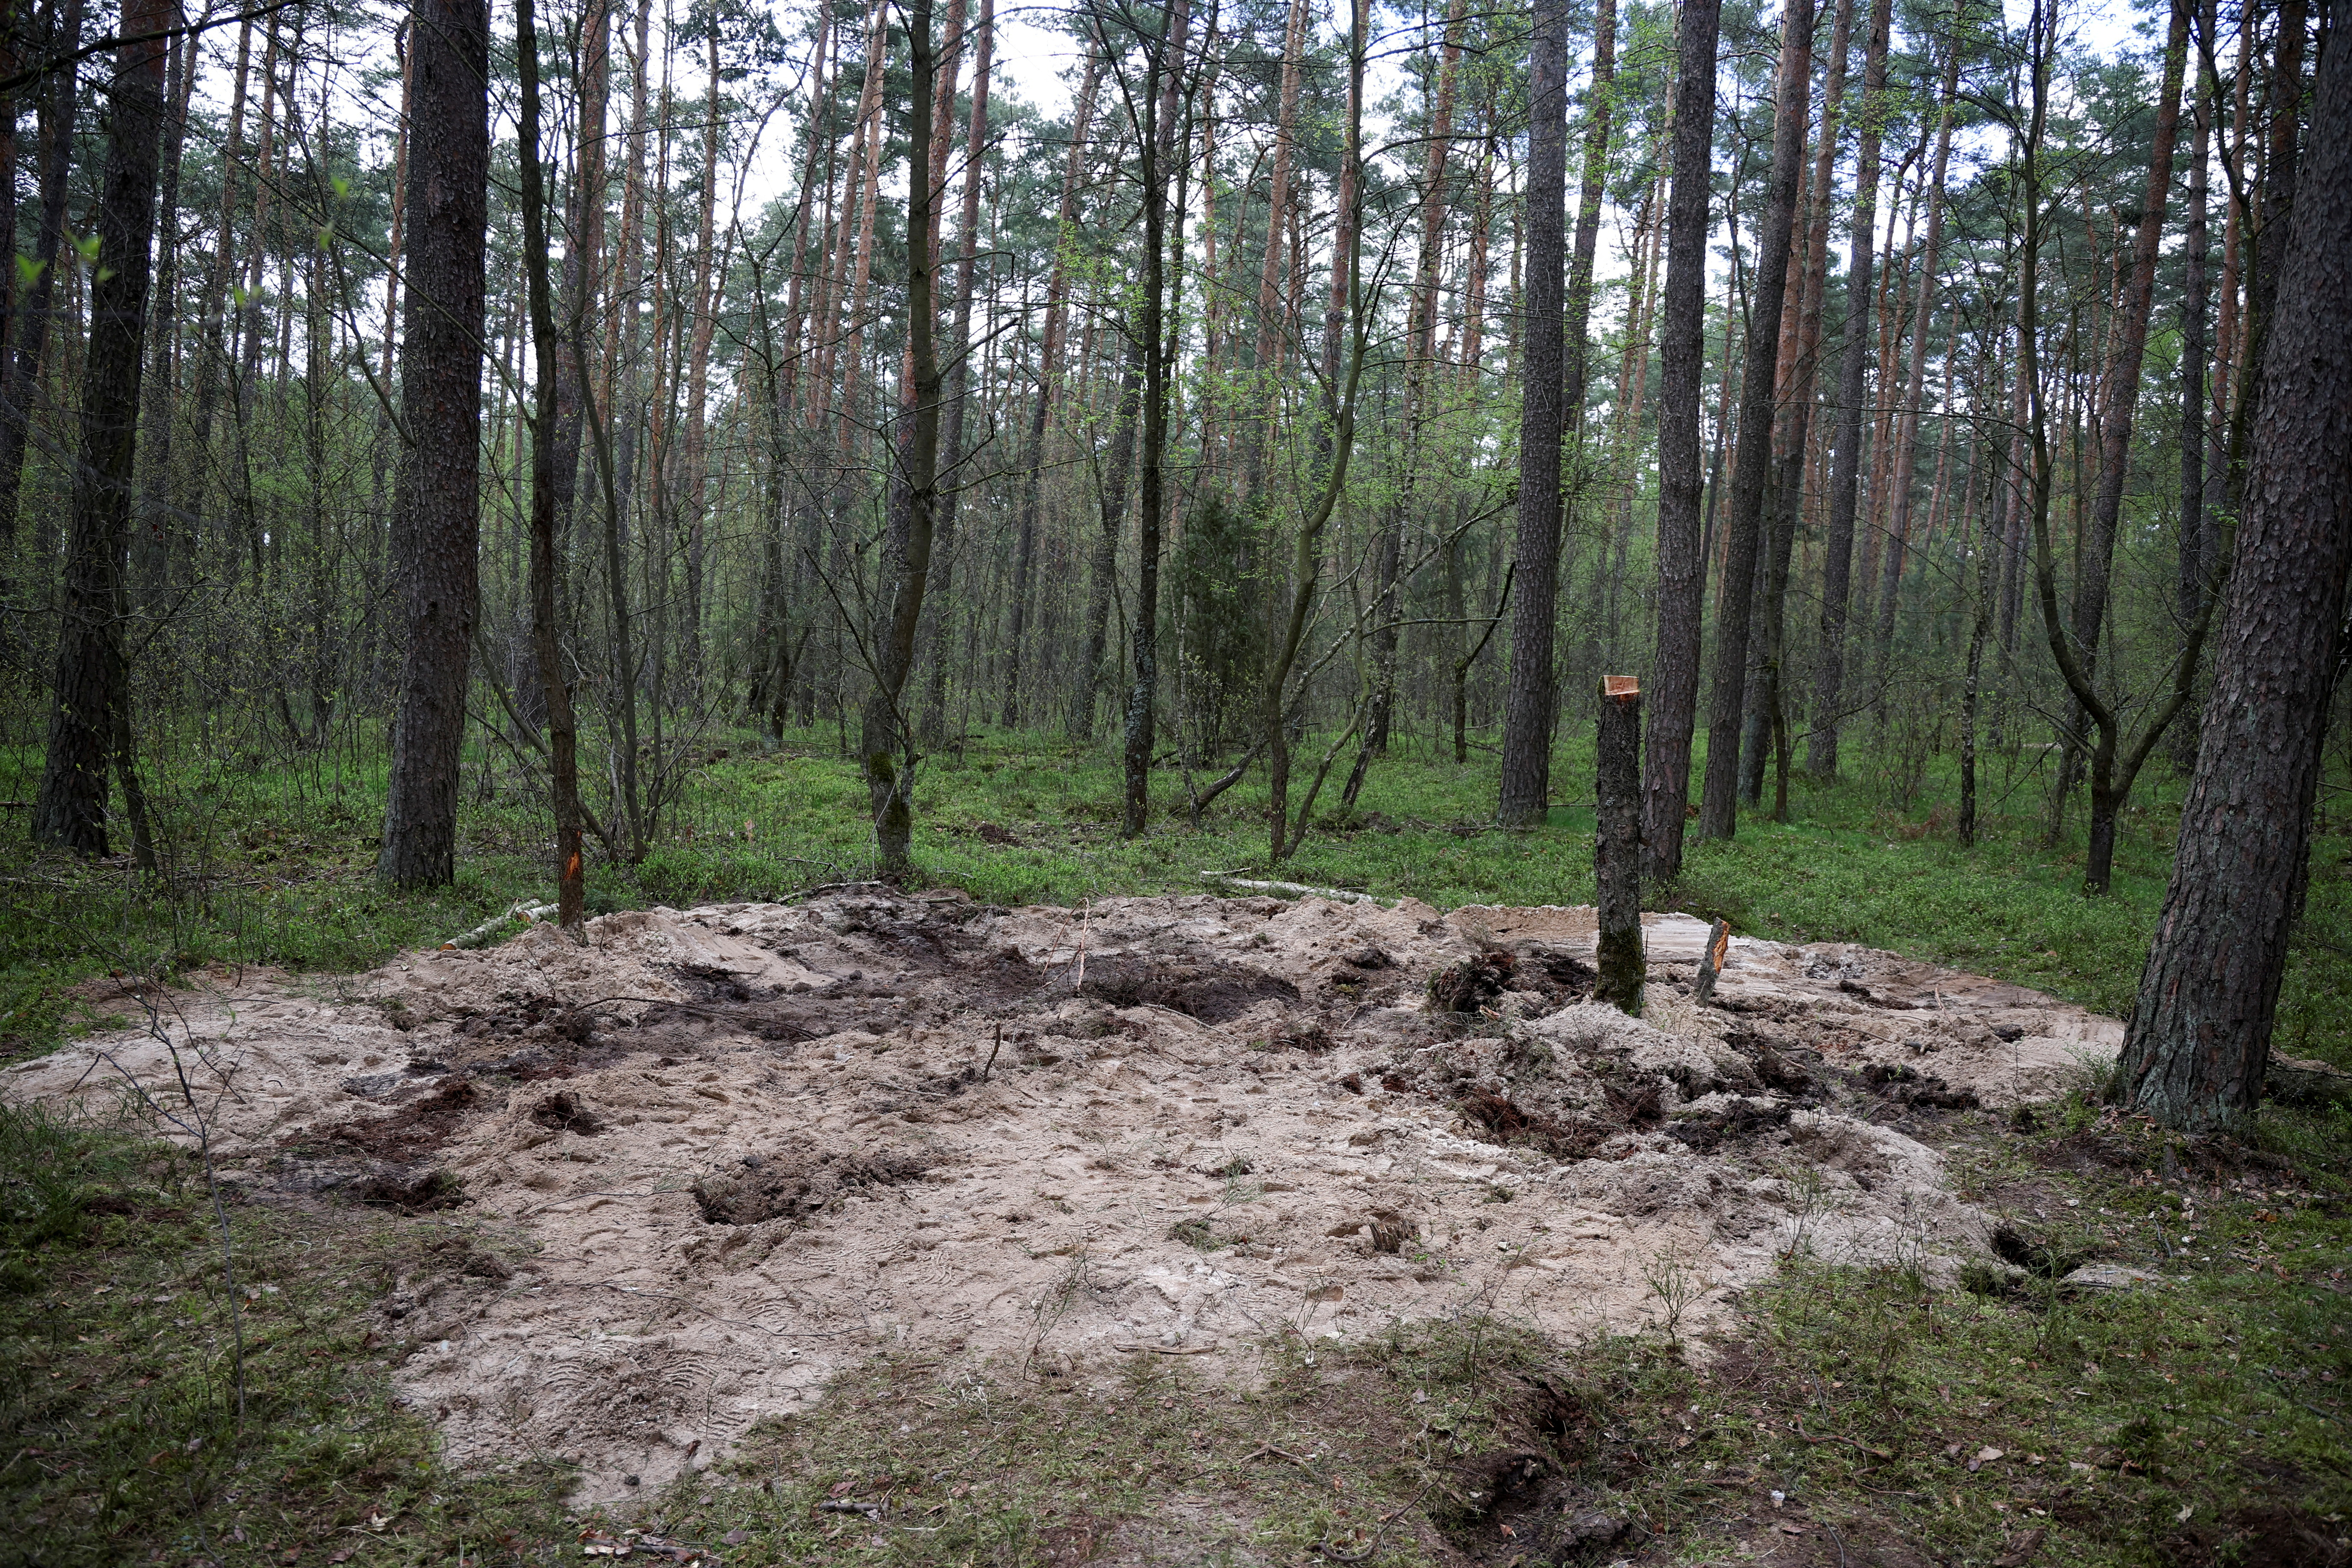 Vista general del lugar donde se encontraron los restos del misil ruso   (REUTERS/Kacper Pempel)